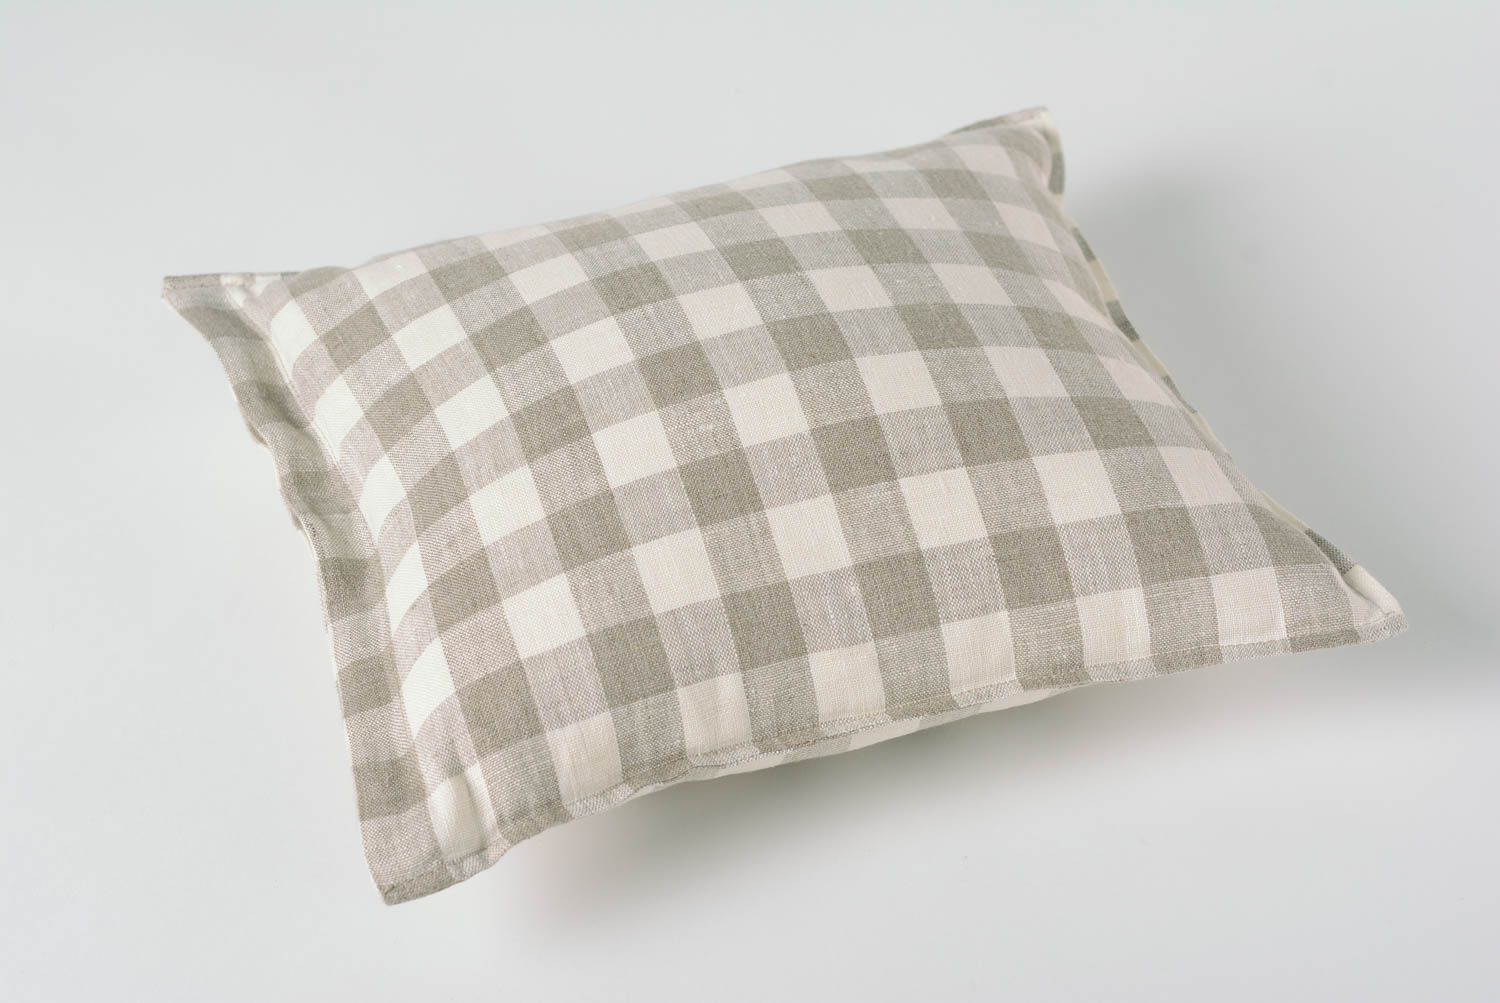 Мягкая диванная подушка в клеточку ручной работы из льна красивая удобная фото 4